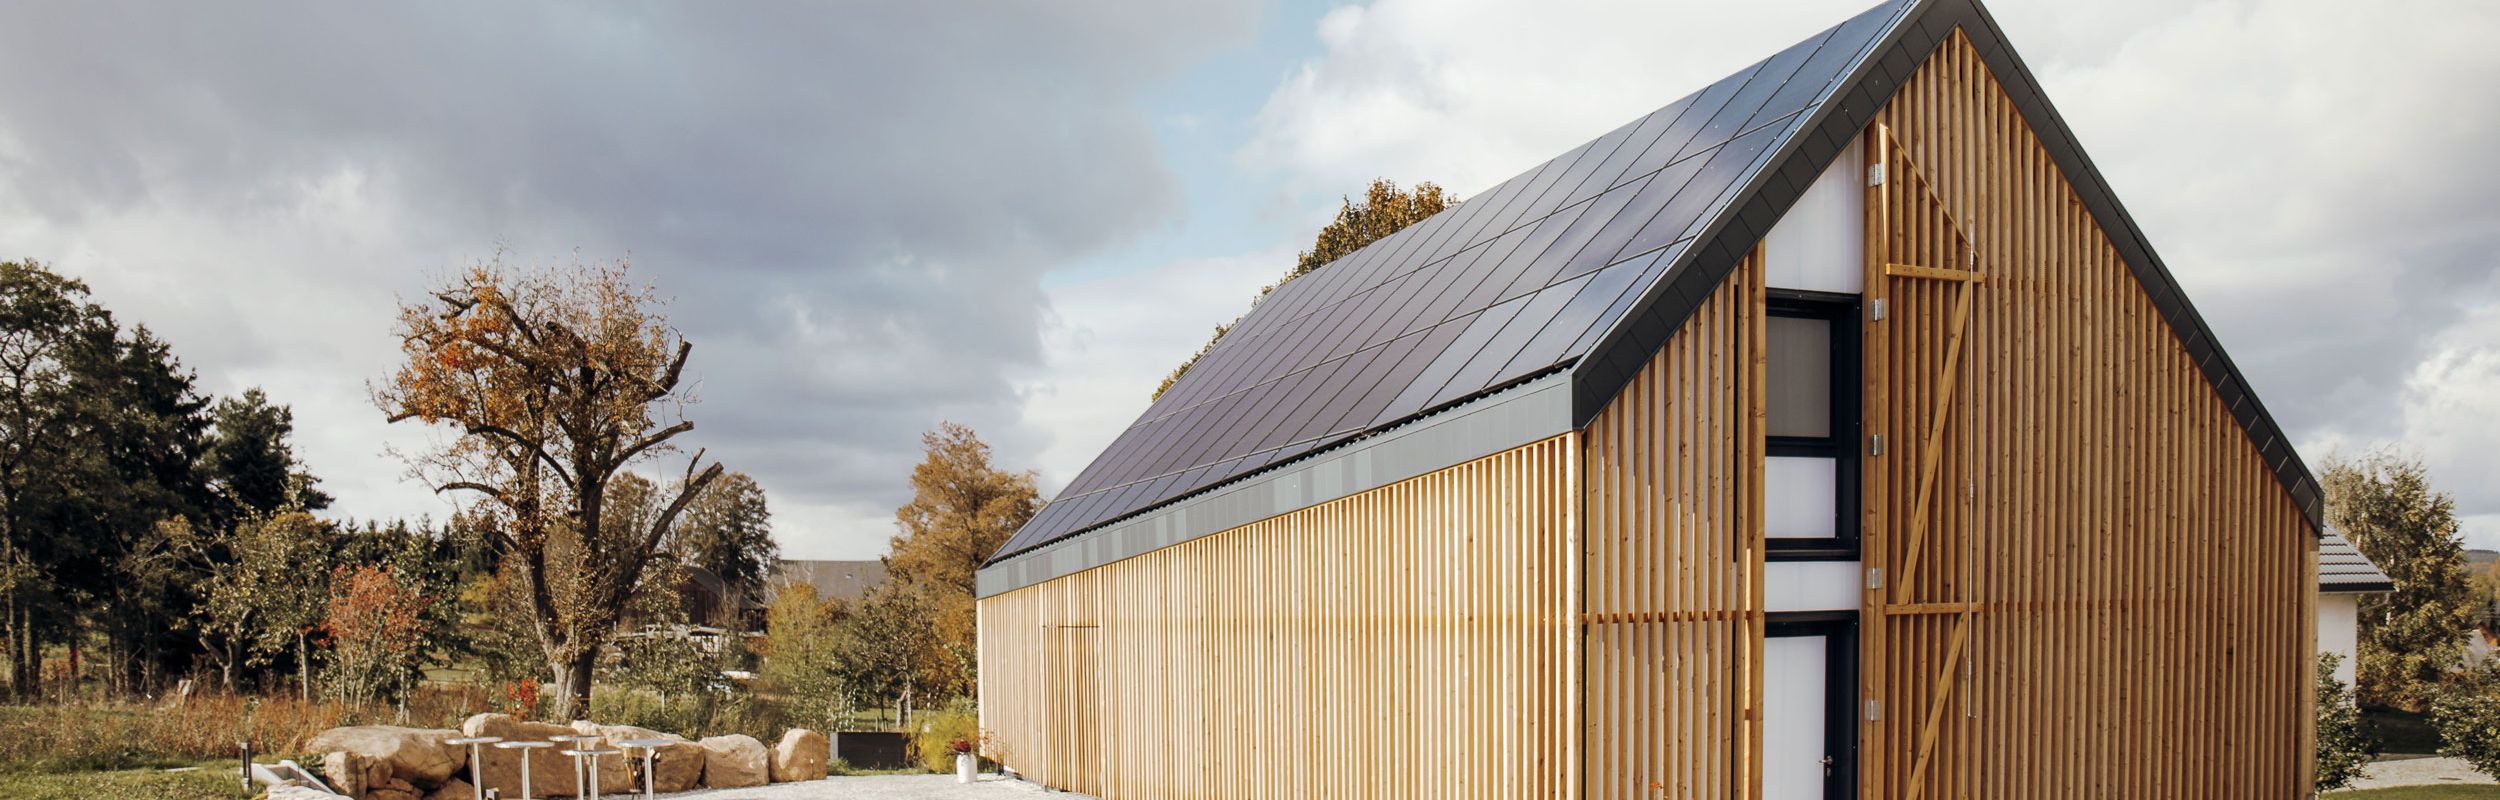 Terra.Hub: Modernes Haus mit Solarpaneelen auf dem Dach und Holzvertäfelung, im Hintergrund Himmel mit Wolken